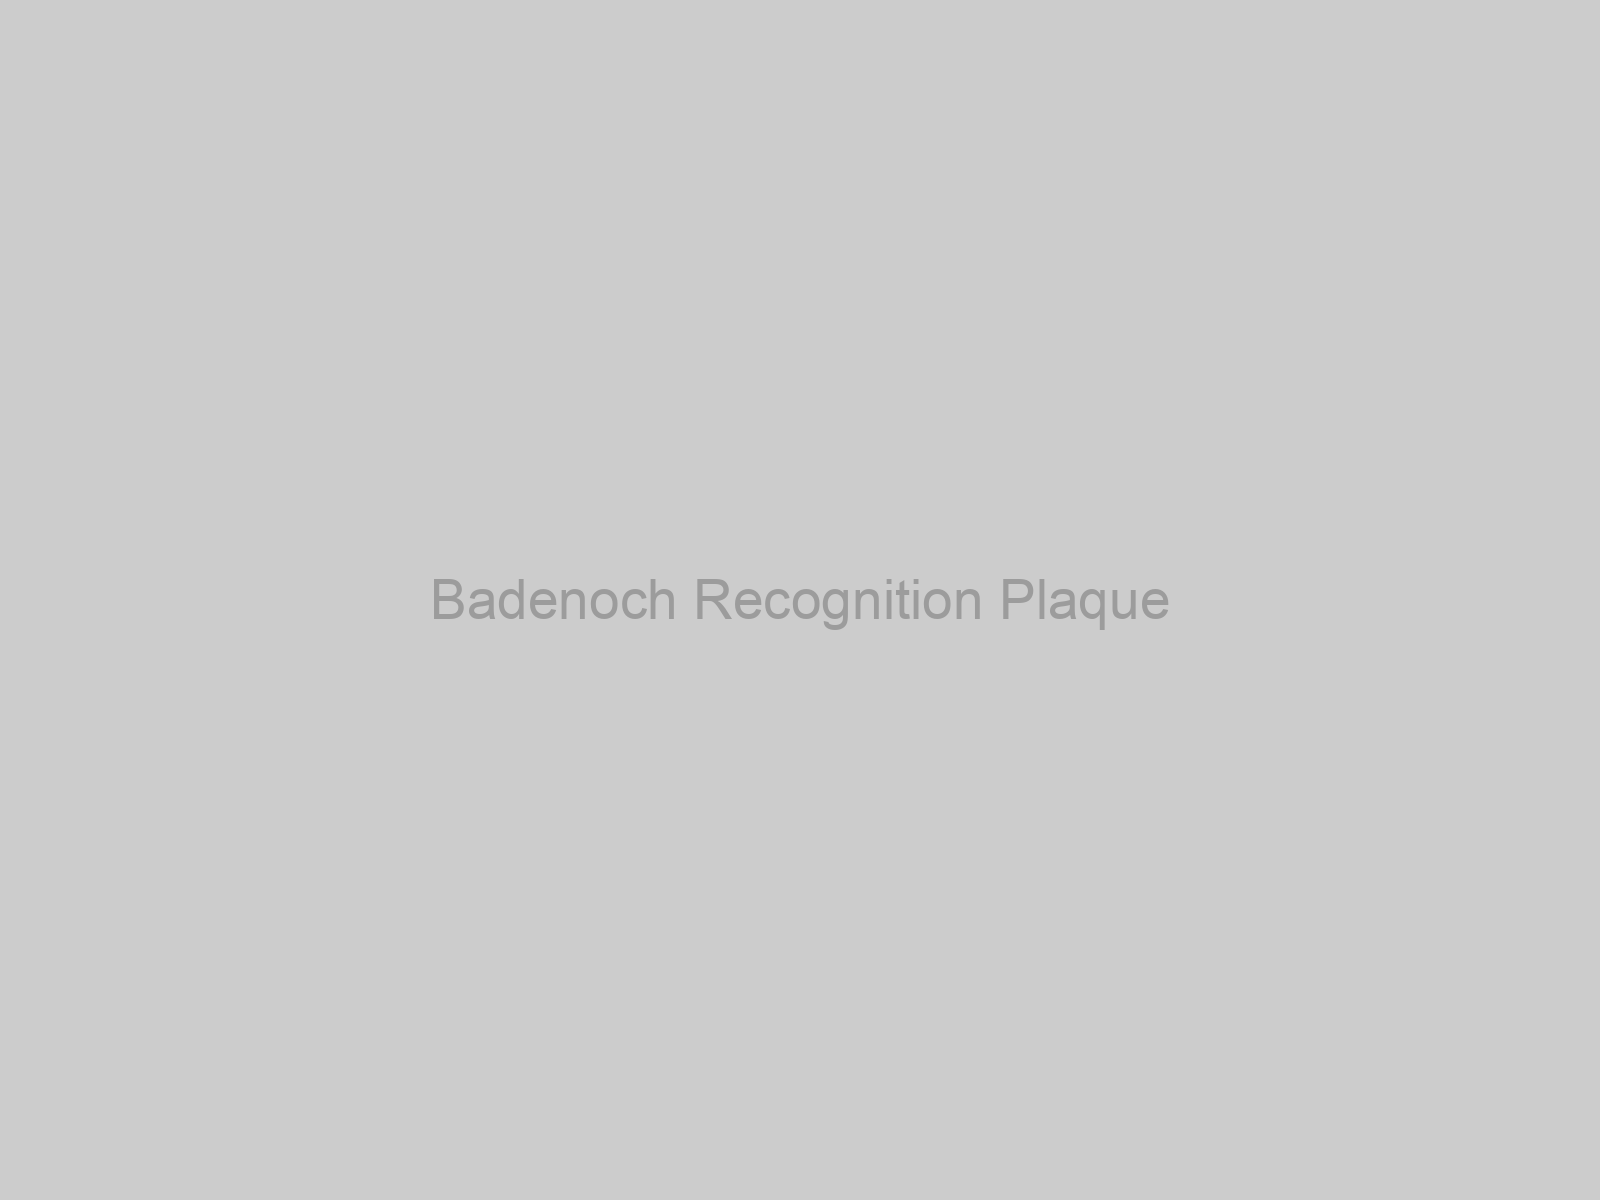 Badenoch Recognition Plaque